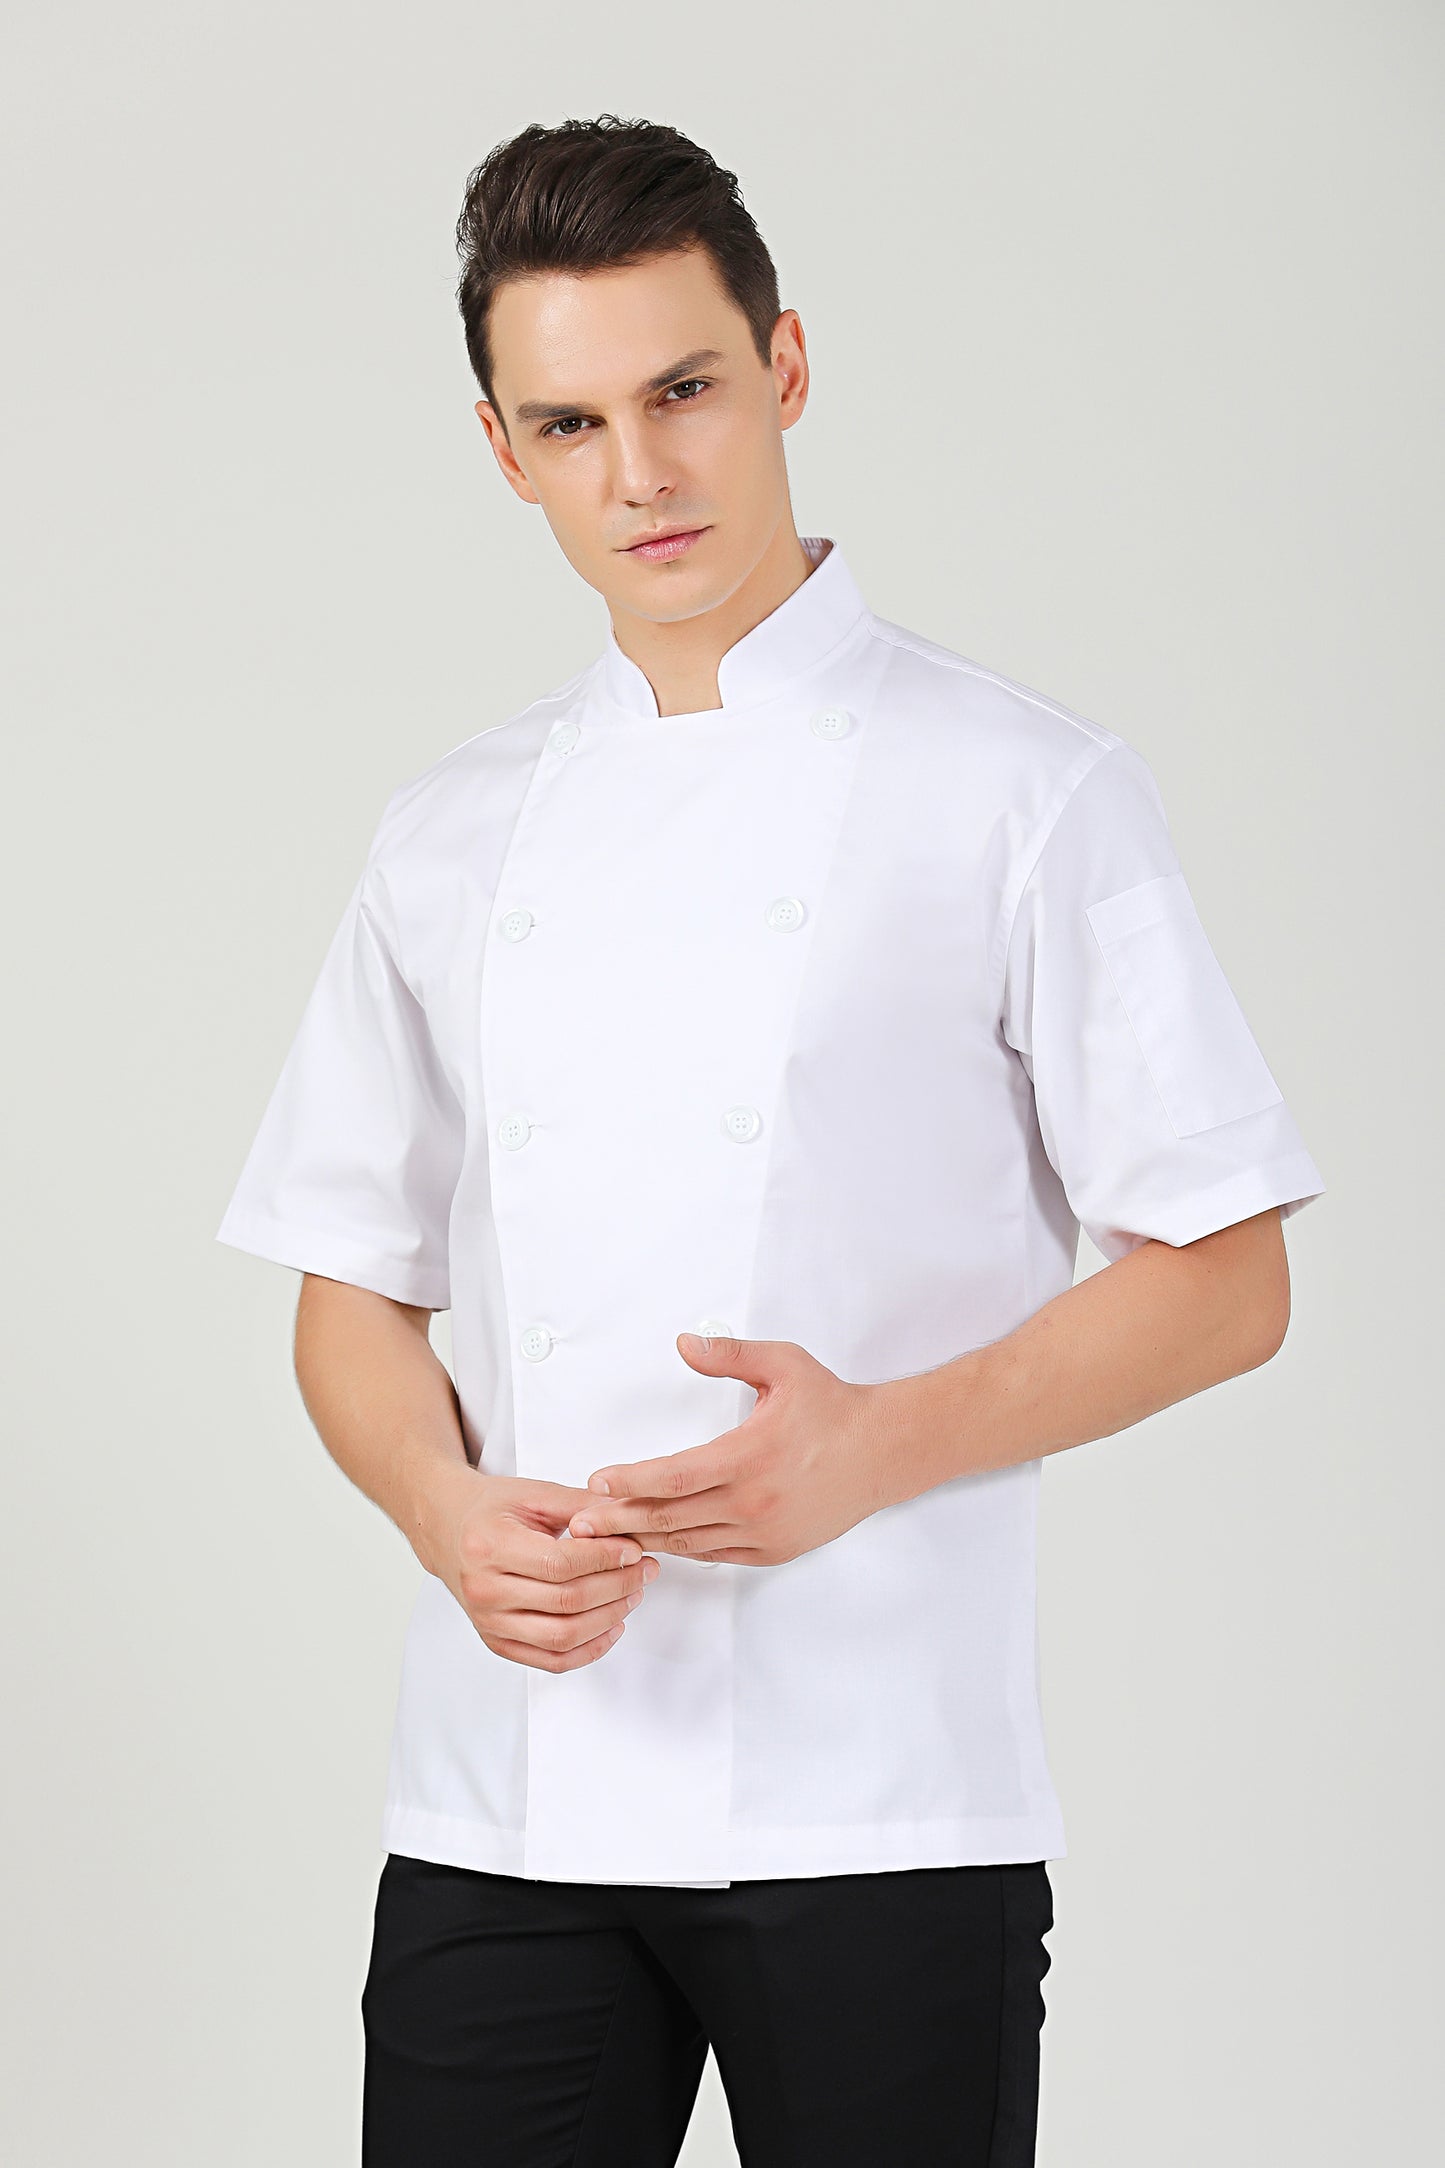 Classic White Chef Jacket, Short Sleeve